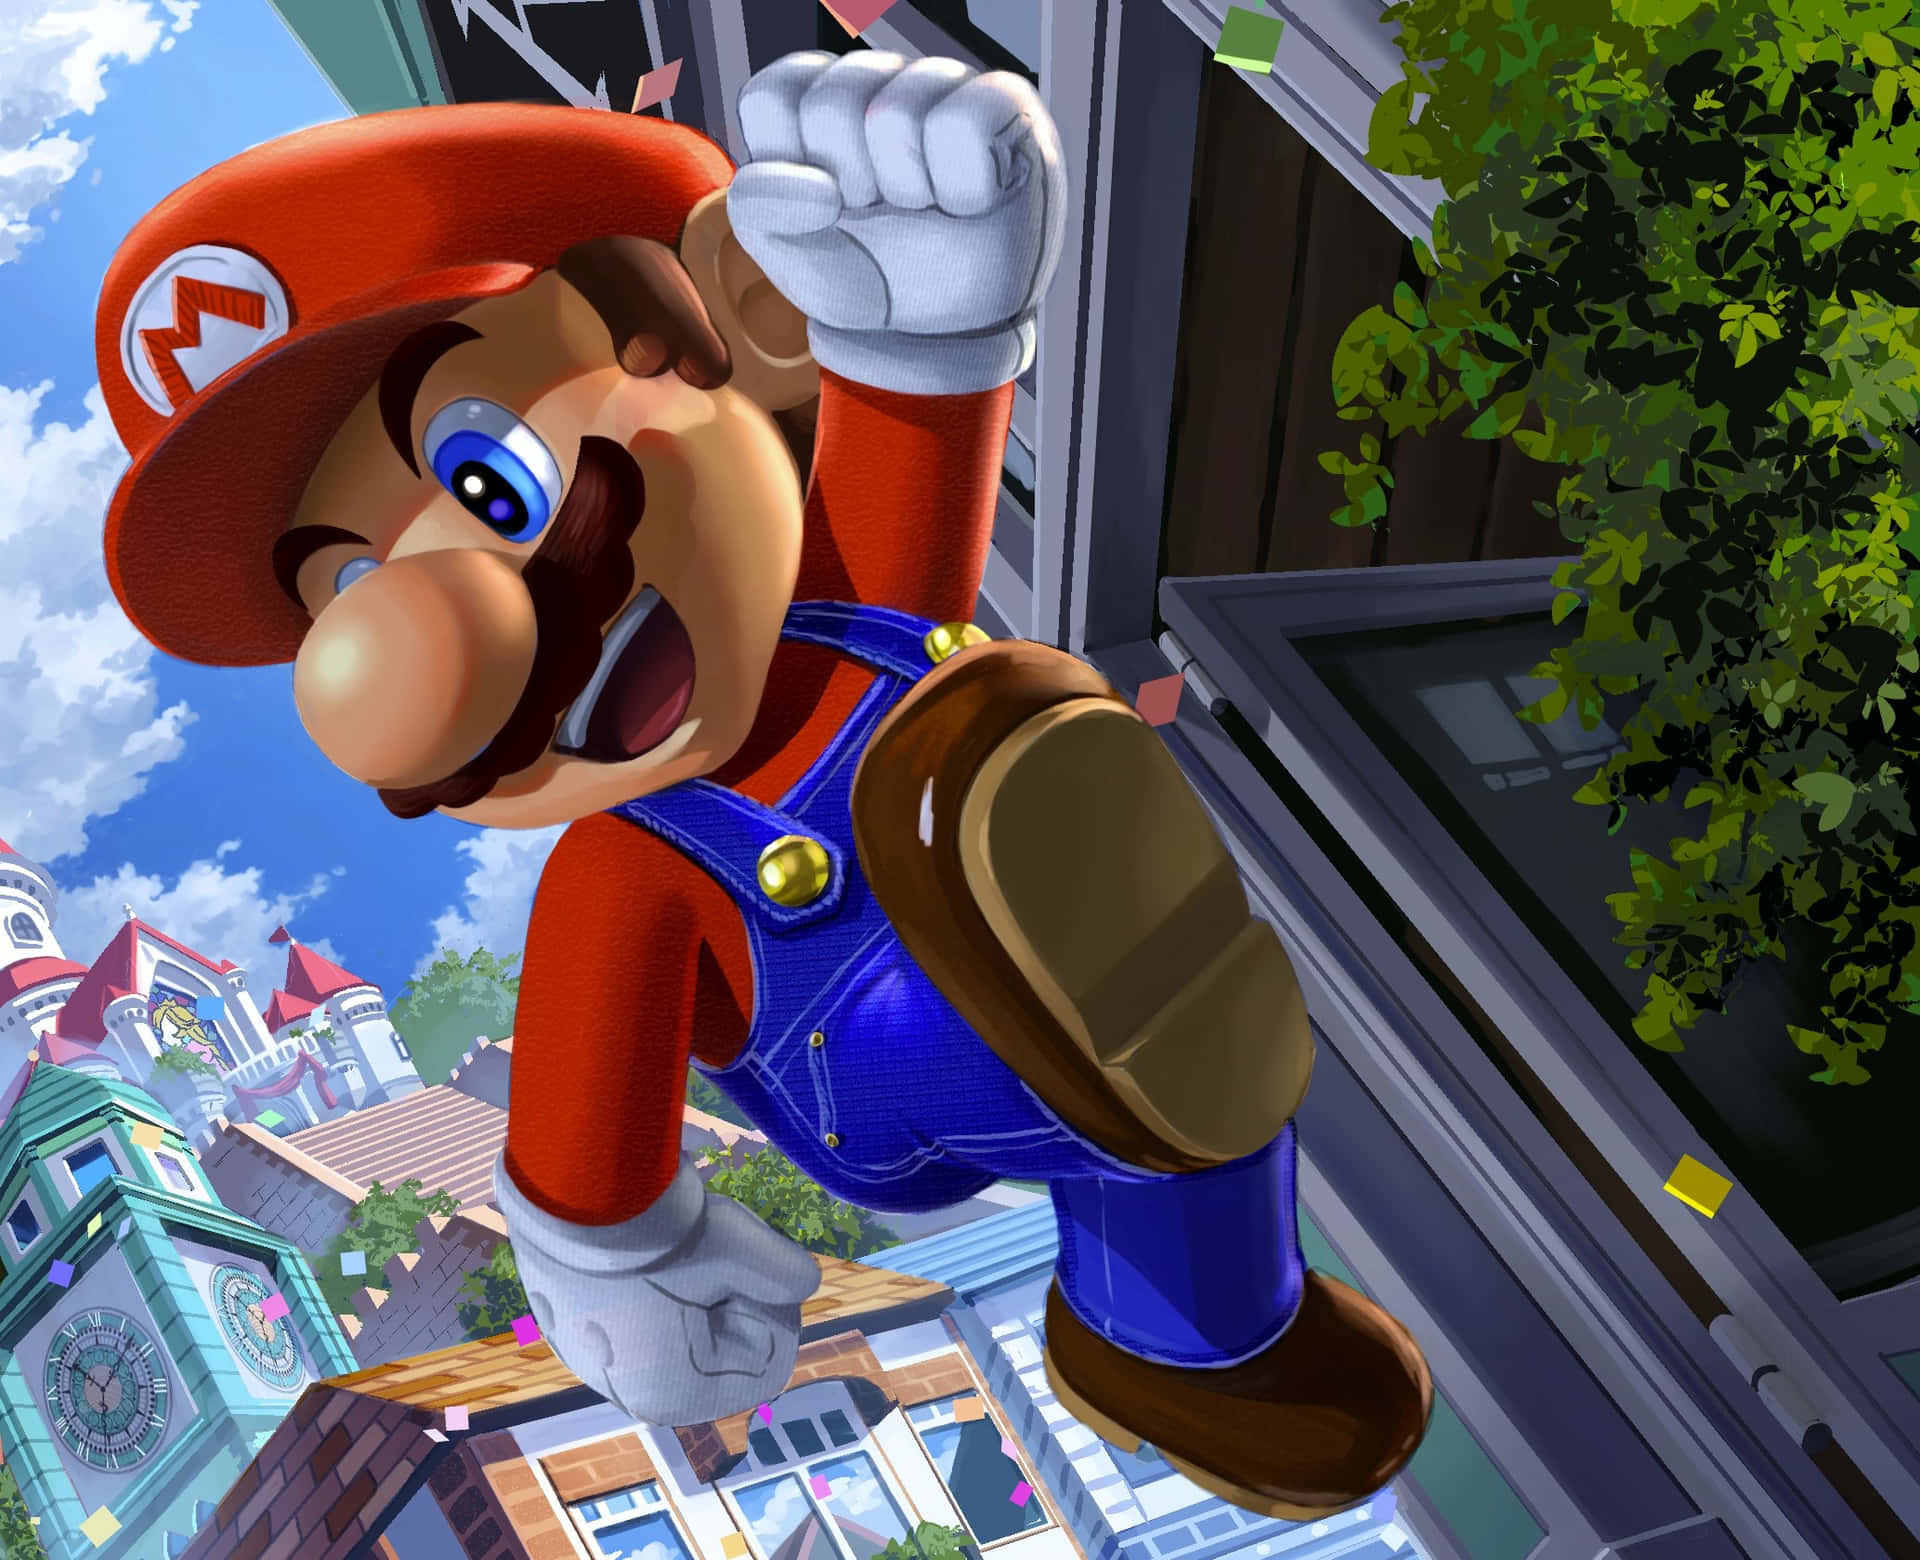 “A Cool Mario Beats All!” Wallpaper